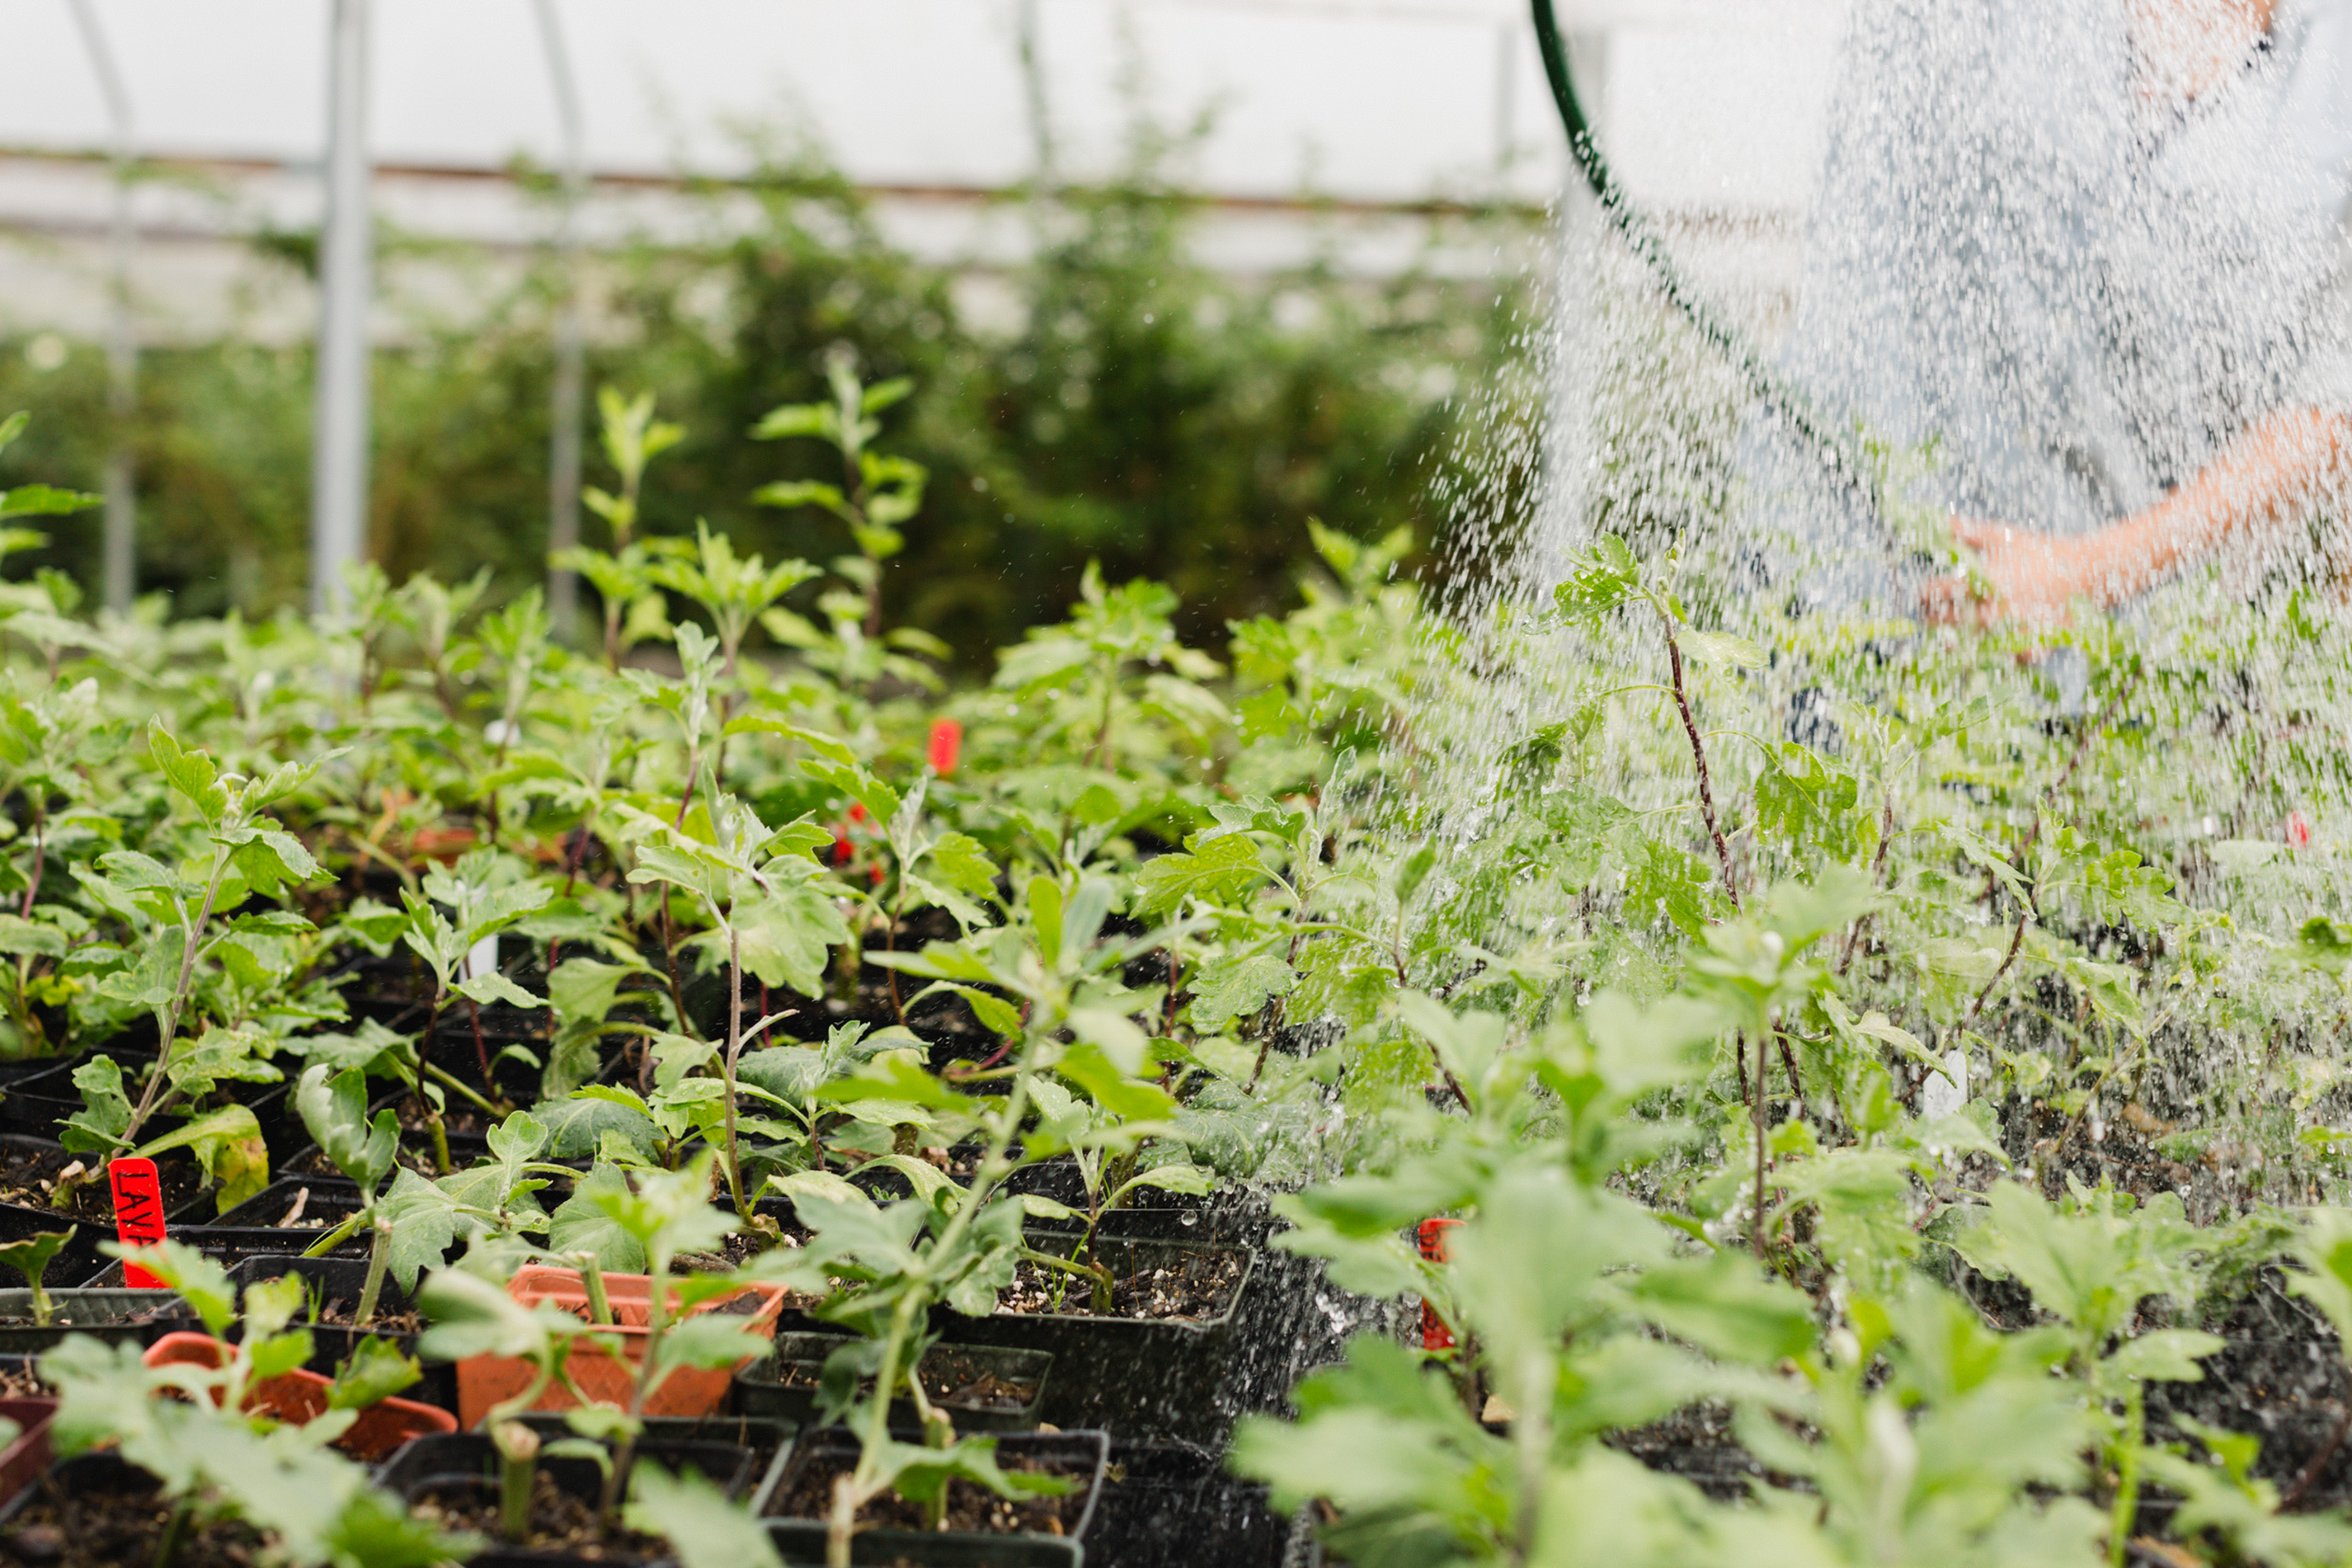 Watering seedlings in the Floret greenhouse